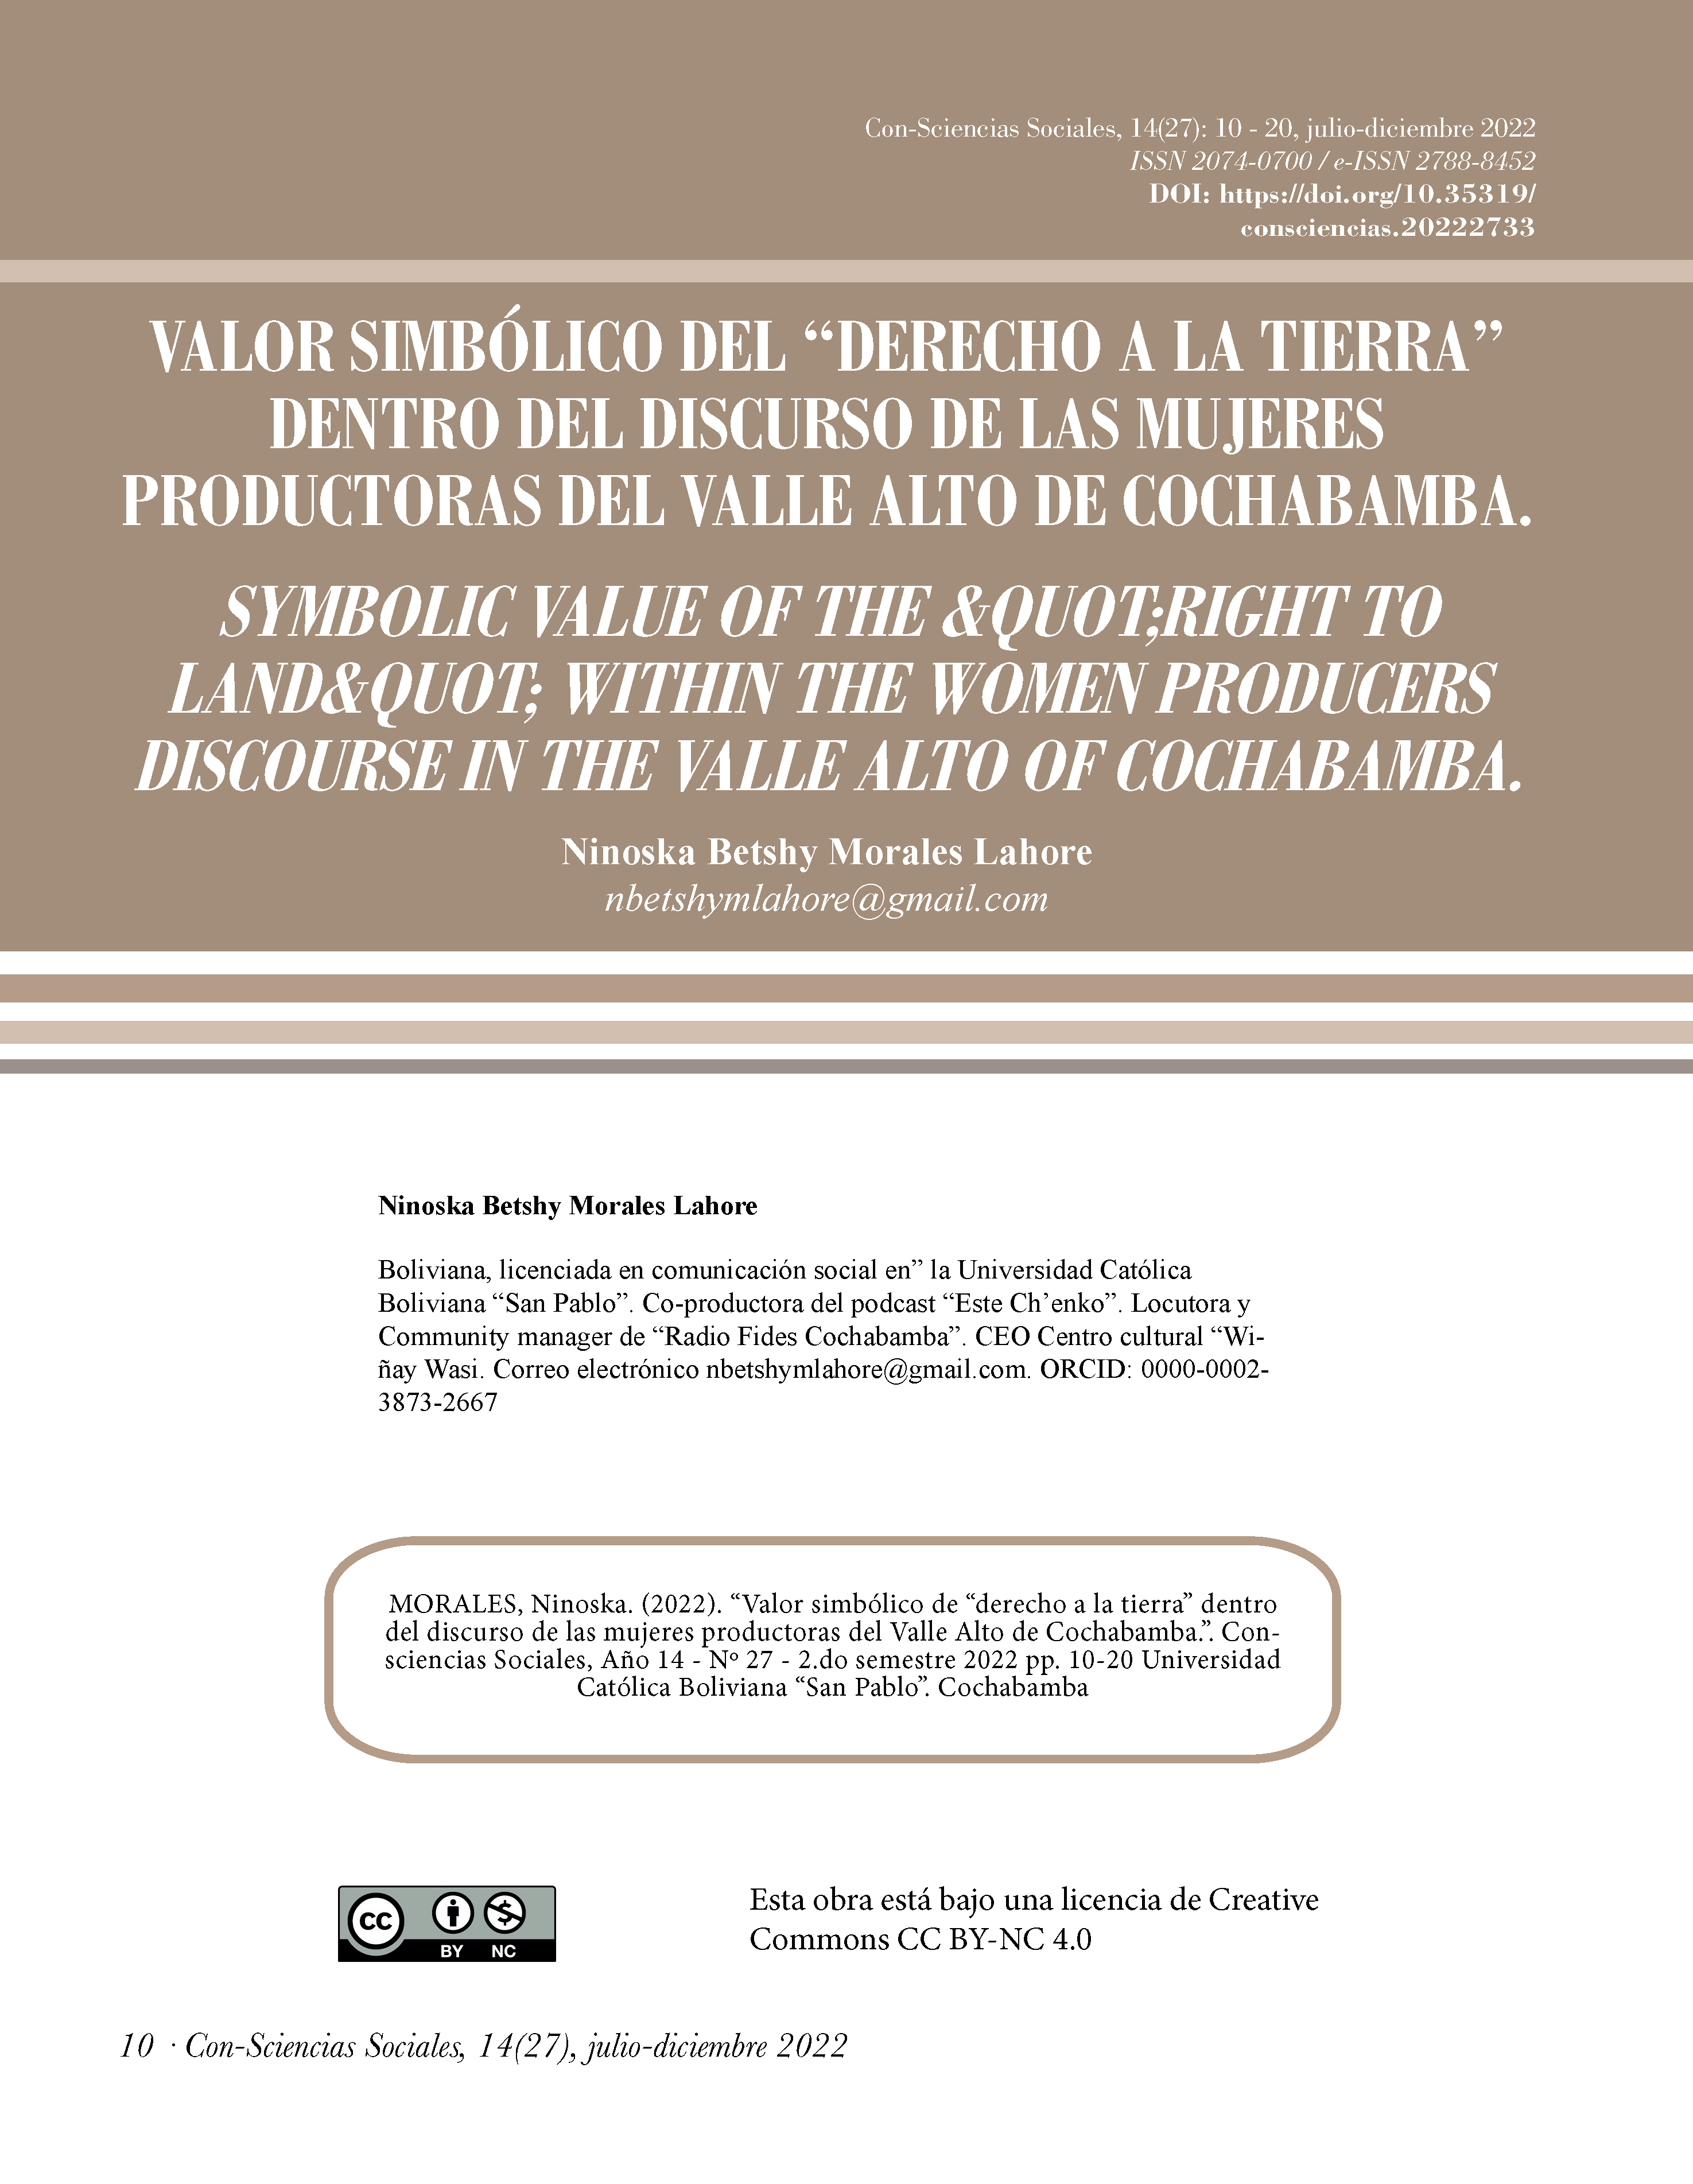 Valor simbólico del “derecho a la tierra” dentro del discurso de las mujeres productoras del Valle Alto de Cochabamba